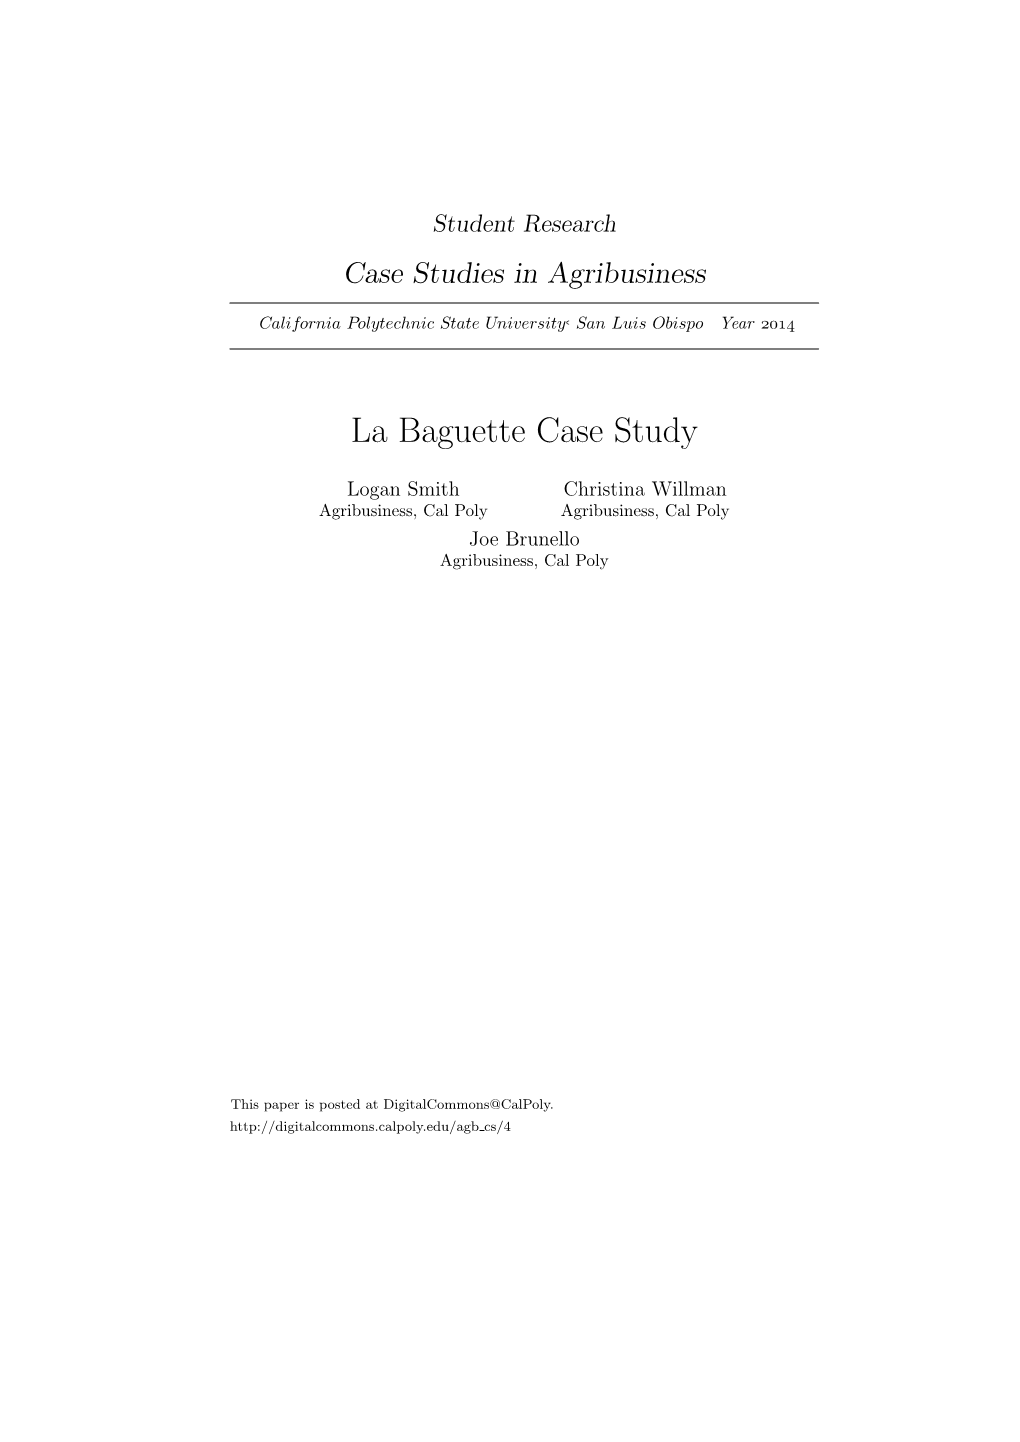 La Baguette Case Study